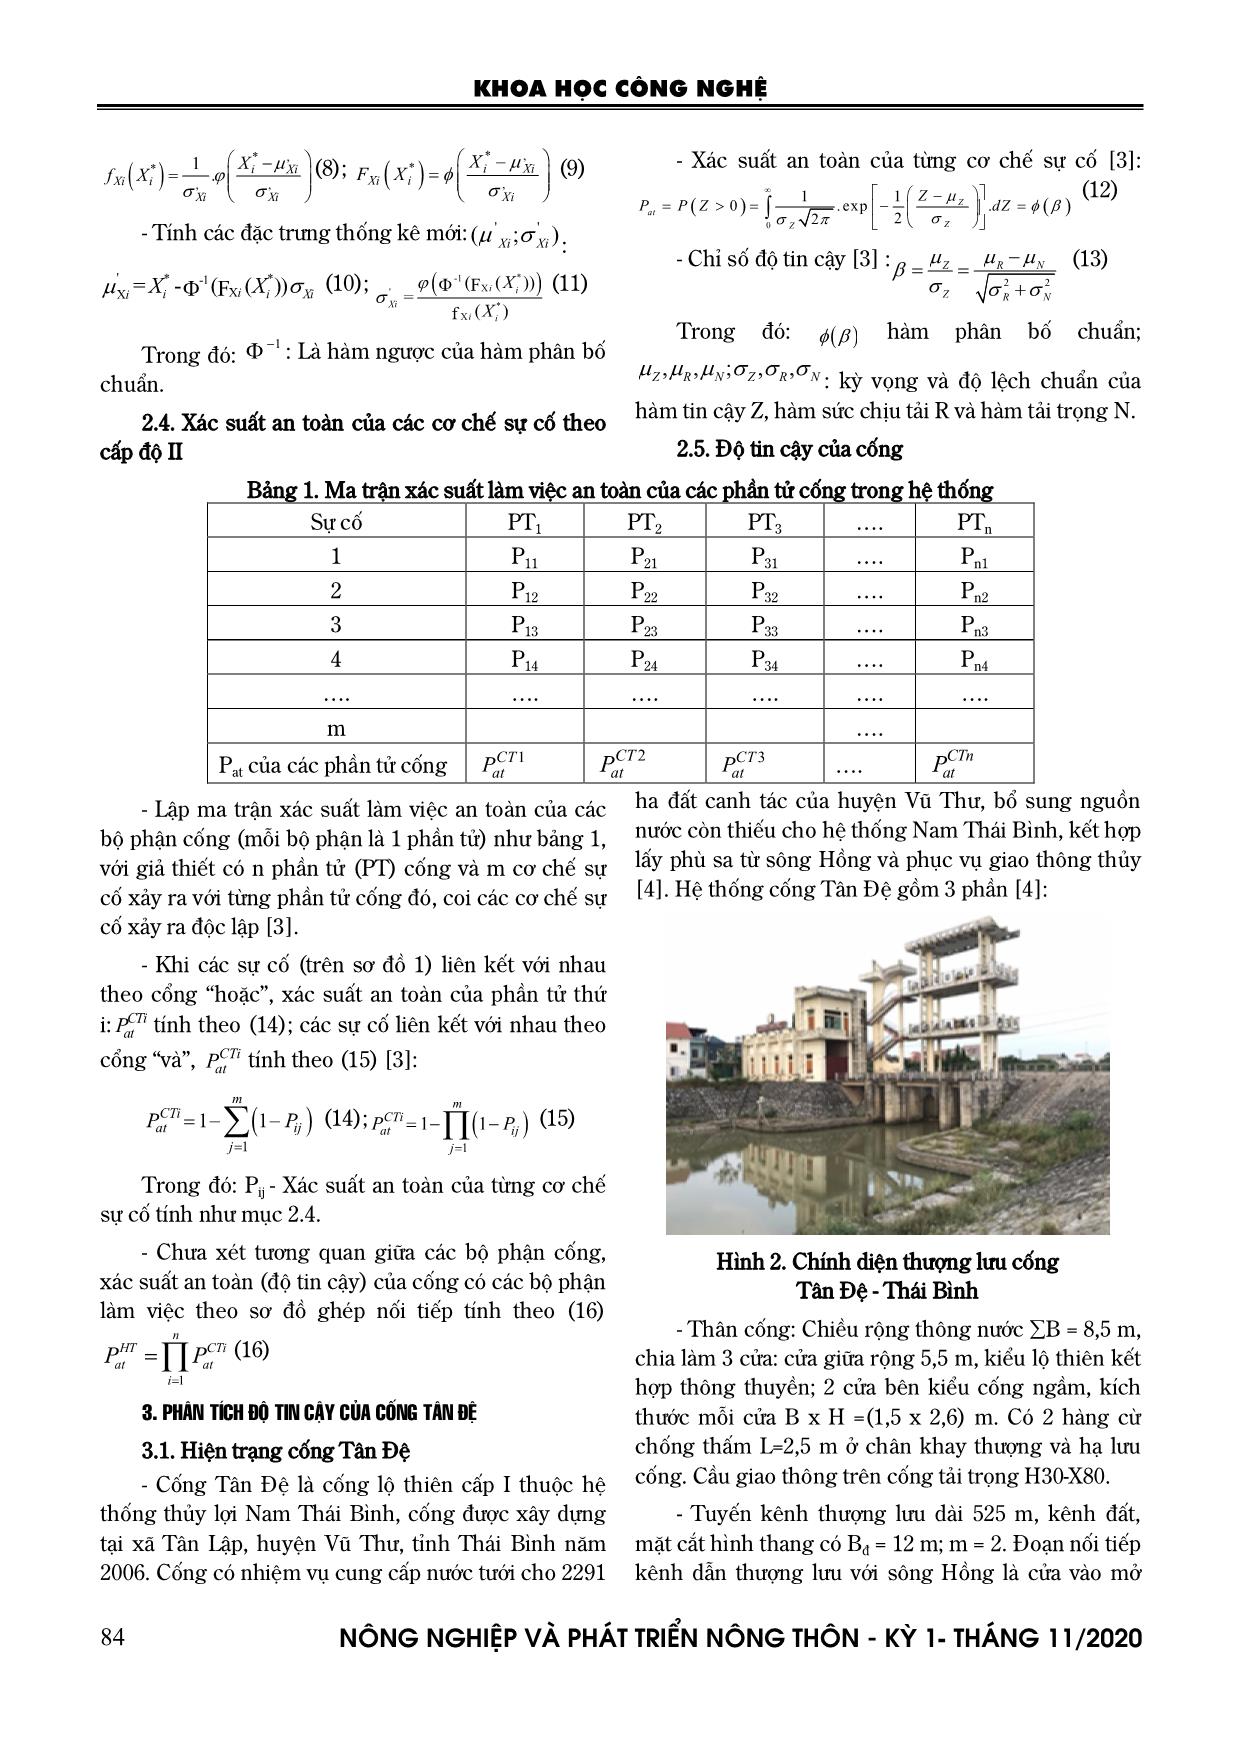 Một phương pháp đánh giá xác suất an toàn của cống lộ thiên - Ứng dụng cho cống tân đệ thuộc hệ thống thủy lợi Nam Thái Bình trang 3